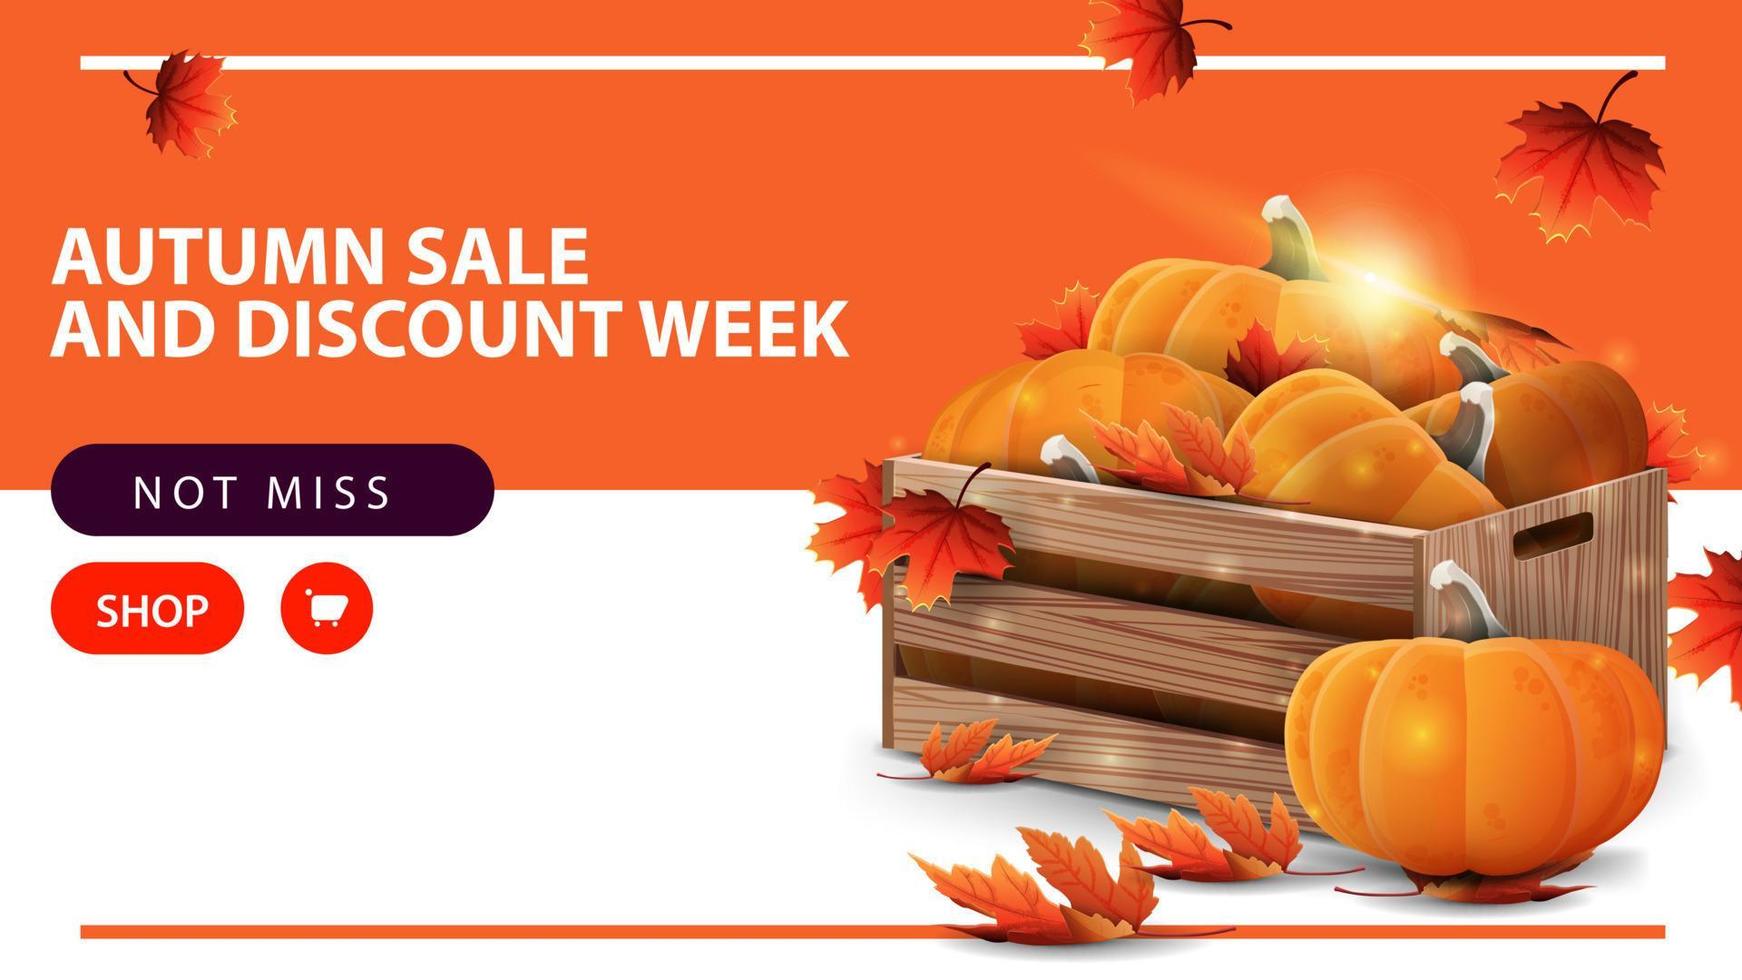 Venta de otoño y semana de descuentos, banner web de descuento horizontal con cajas de madera de calabazas maduras y aleros de otoño vector